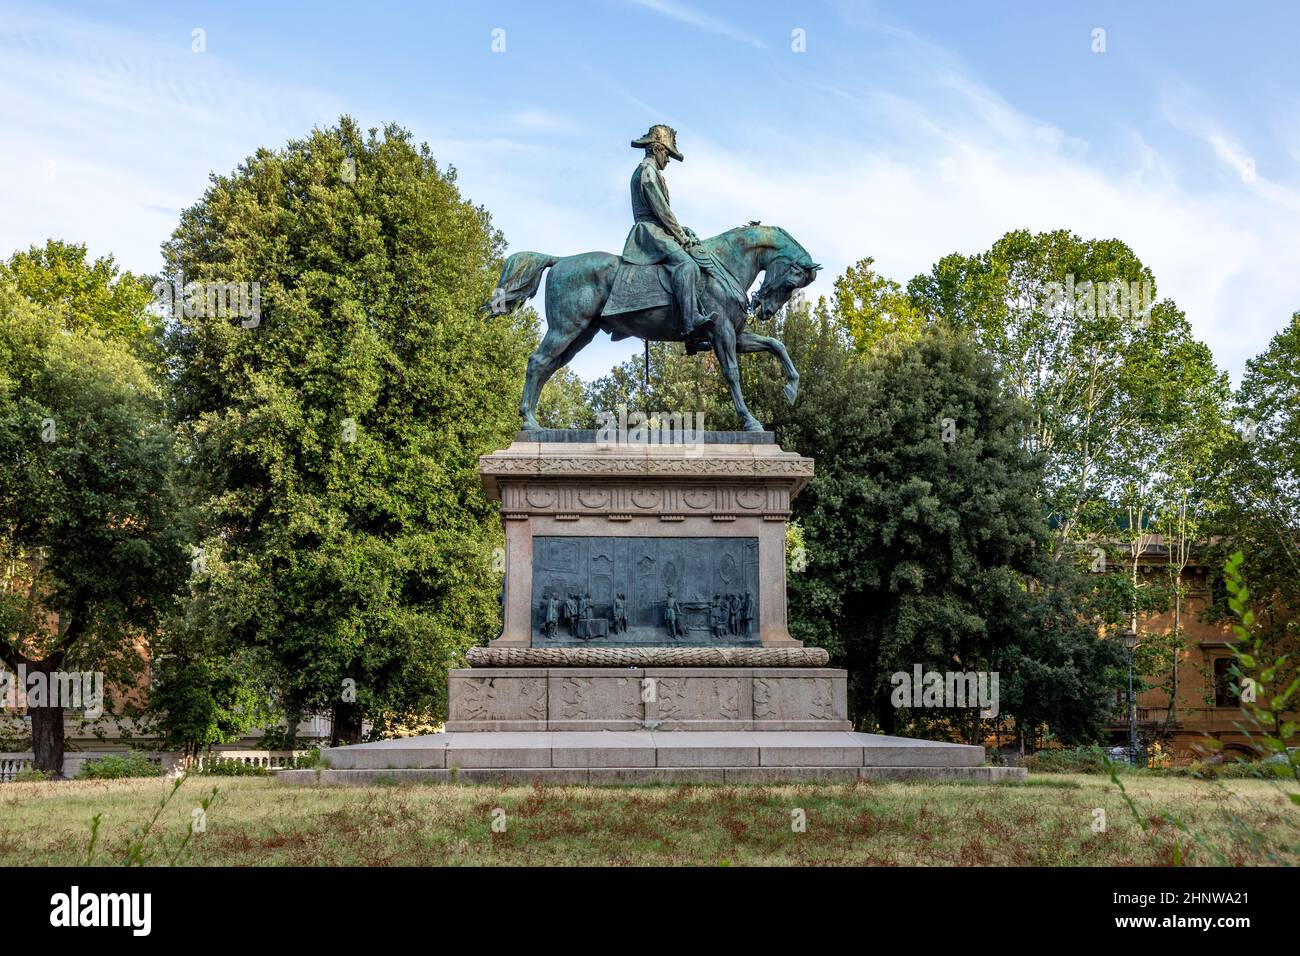 public park Giardino in Rome with rider statue of  Carlo Alberto In Rome, Italy Stock Photo